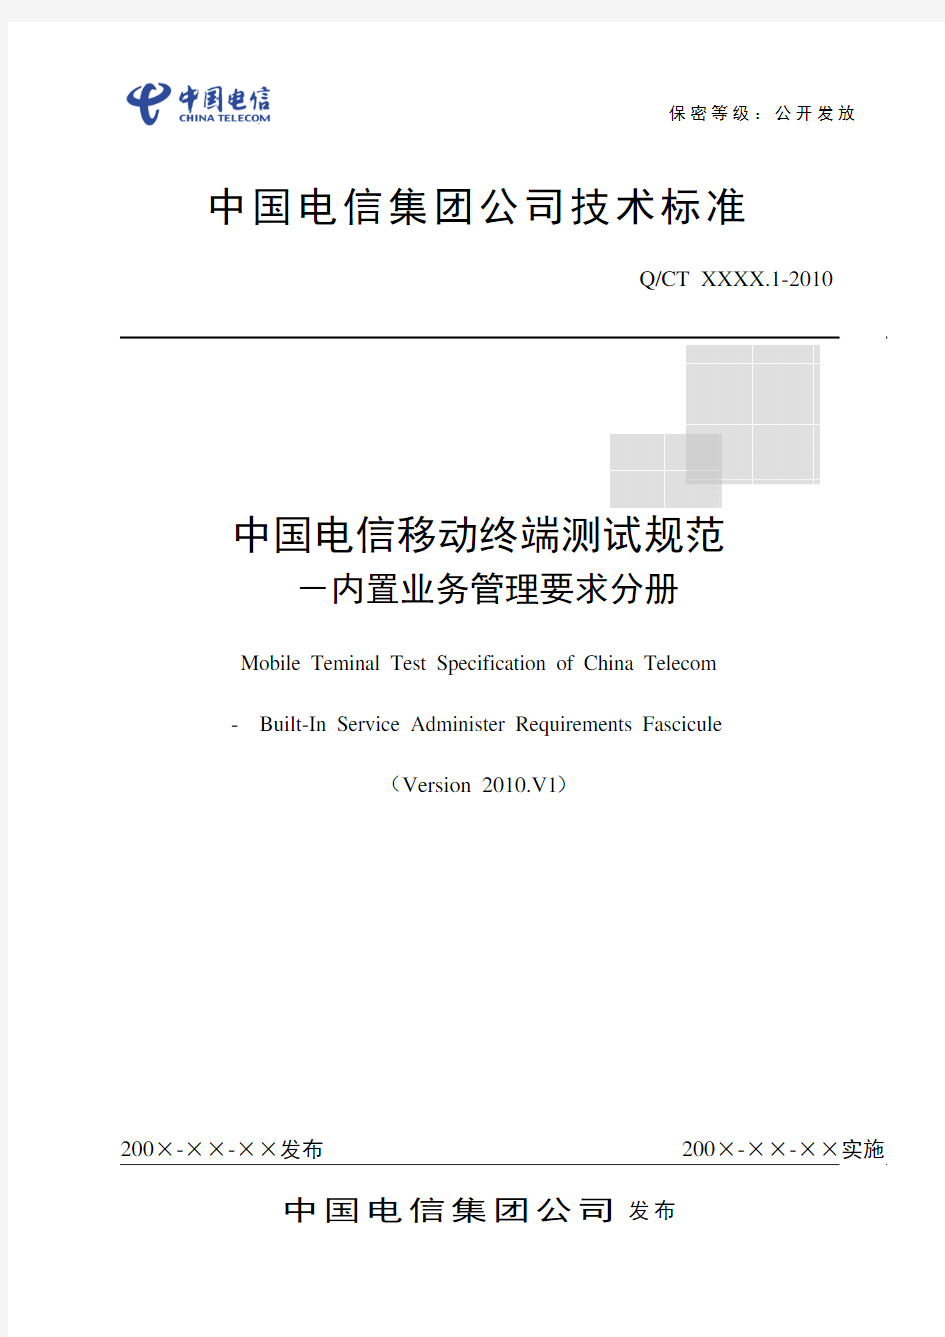 中国电信移动终端测试规范-内置业务管理要求分册V1(Clear版)201000628